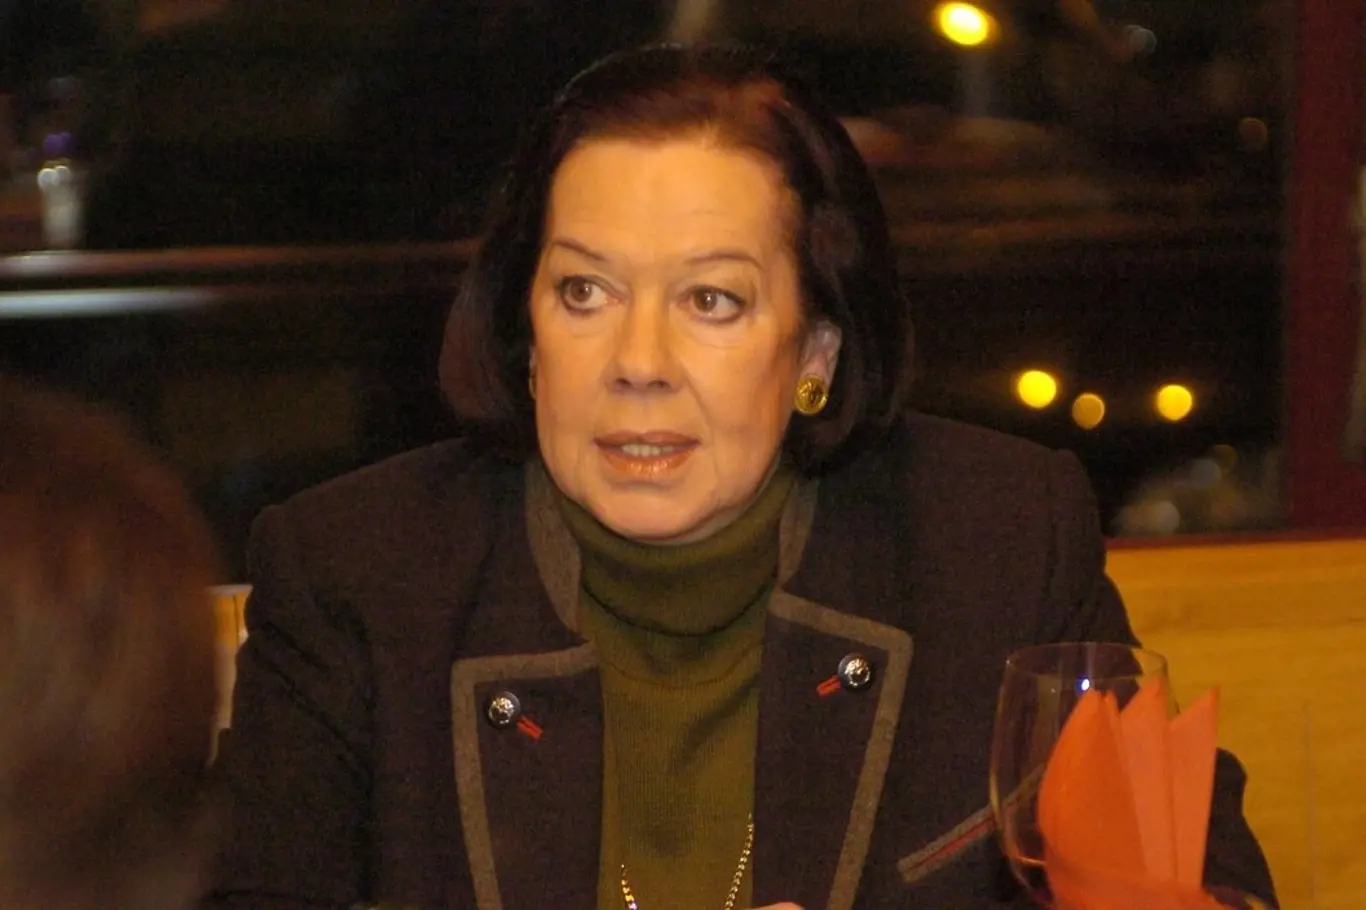 Yvonne Přenosilová